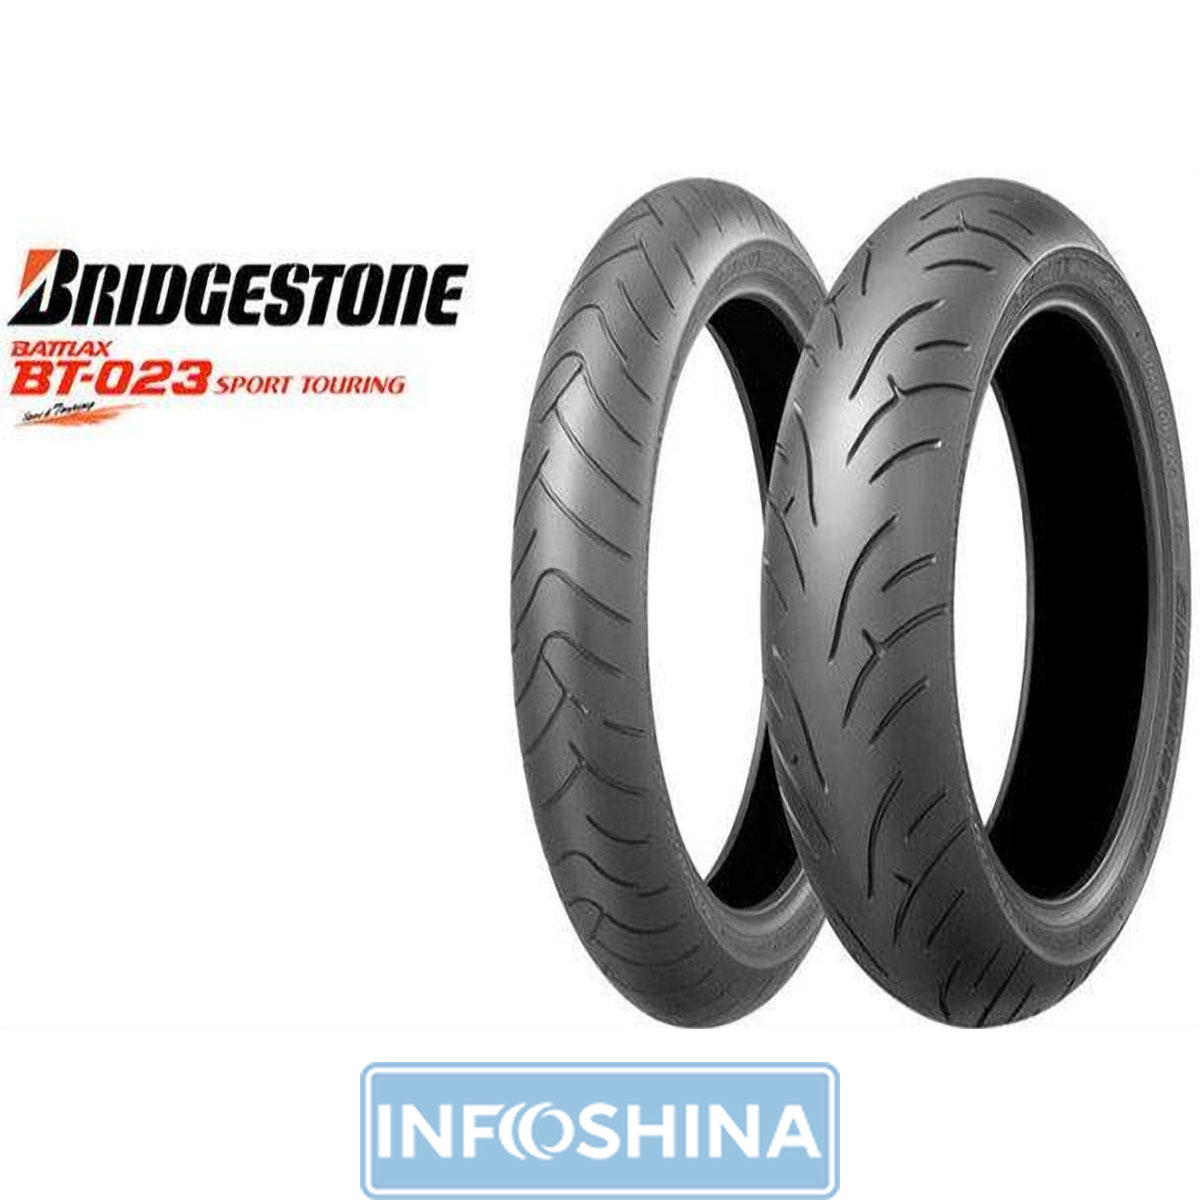 Купить шины Bridgestone S20 160/60 R17 69W